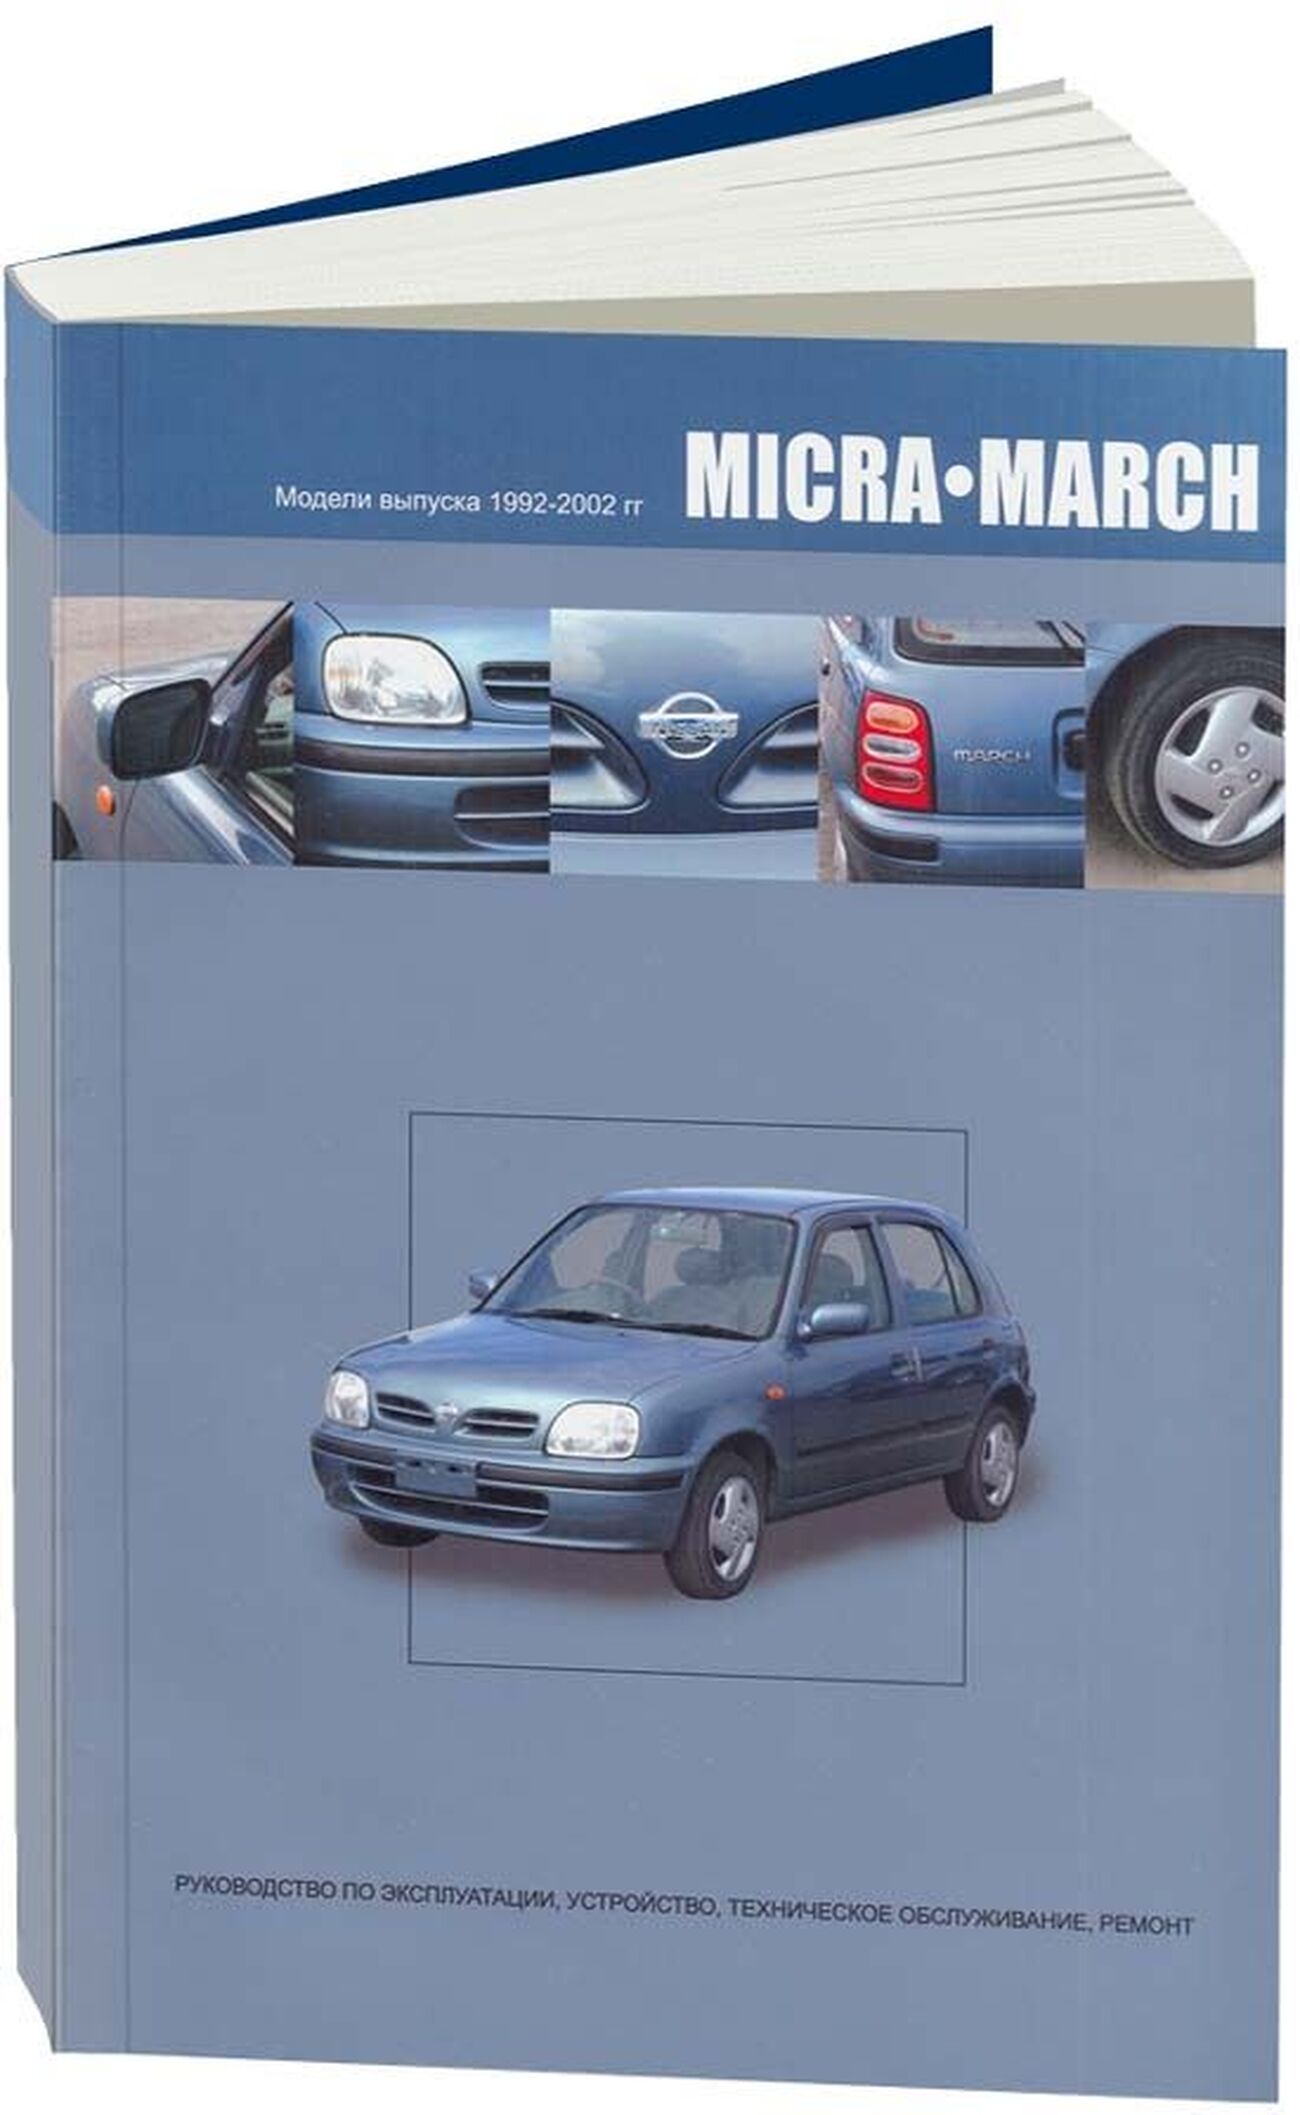 Книга: NISSAN MARCH / MICRA (б) 1992-2002 г.в., рем., экспл., то | Автонавигатор